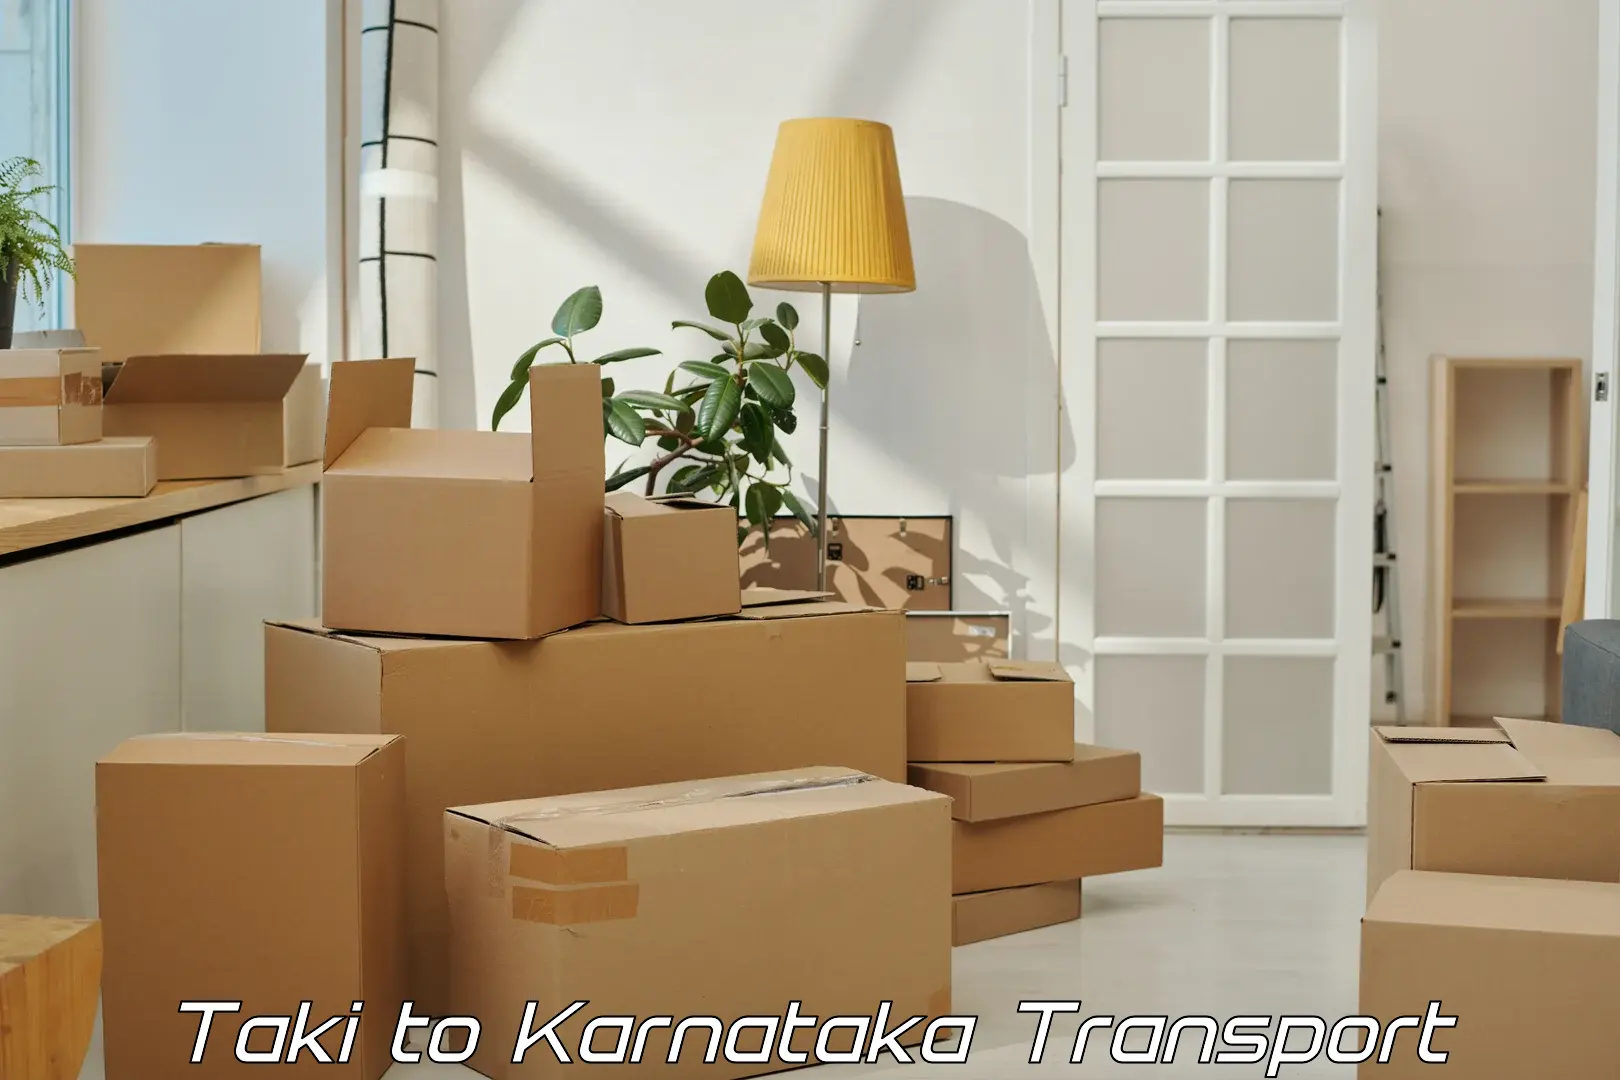 Bike shipping service Taki to Karnataka